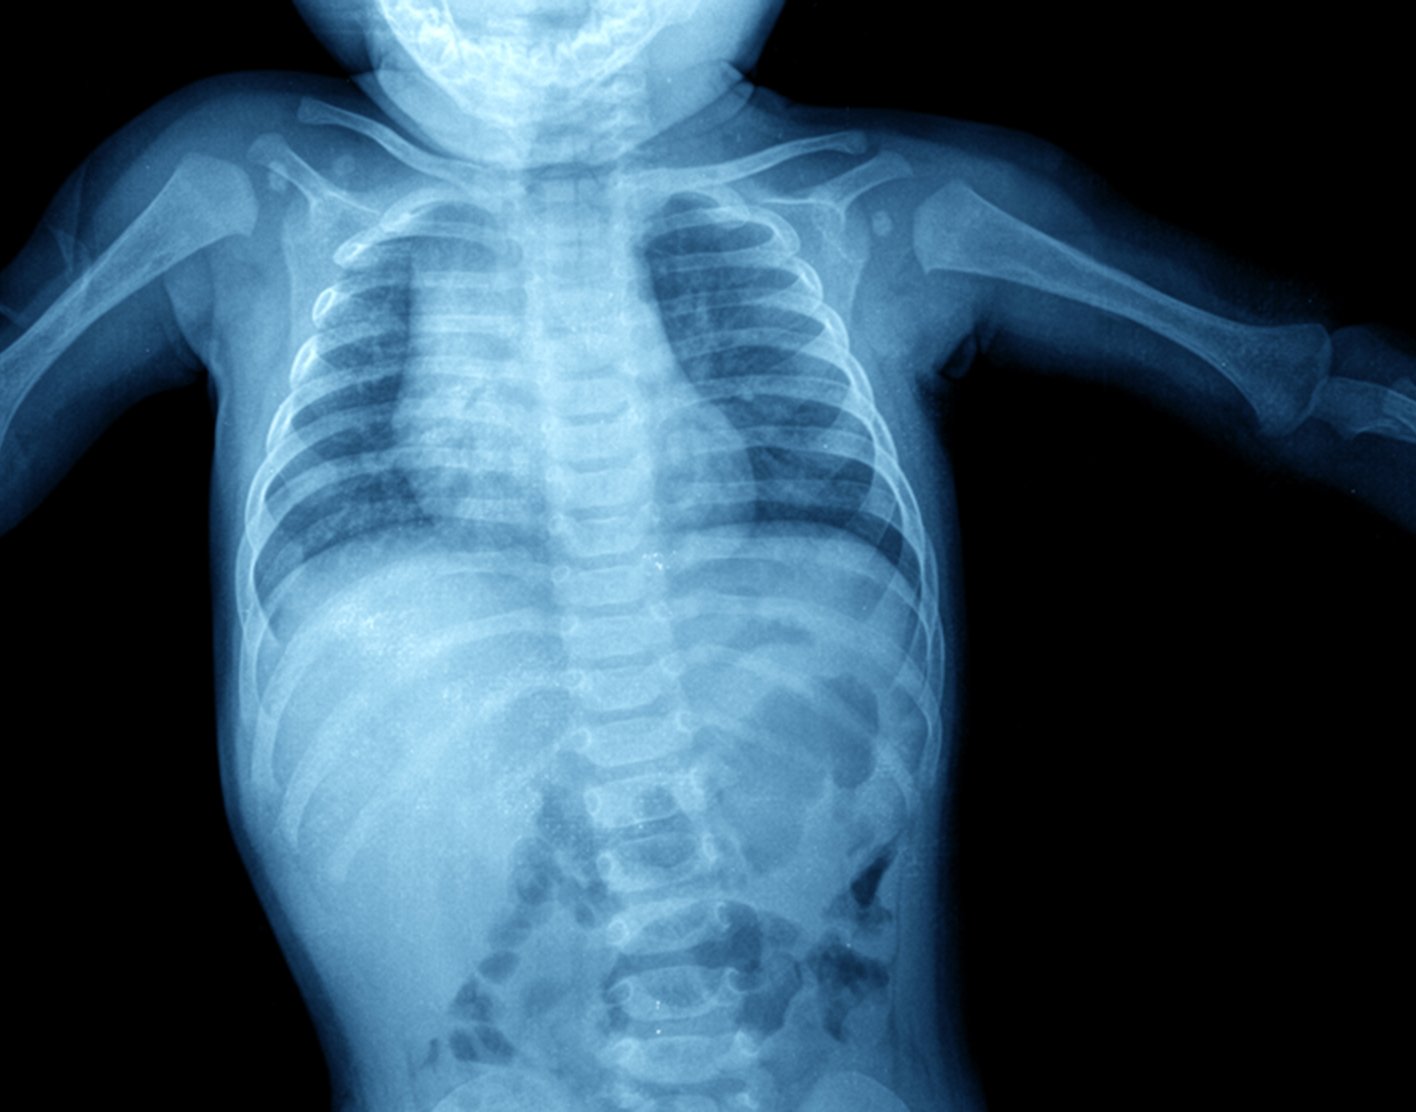 abdominal-x-ray-708x556-2x